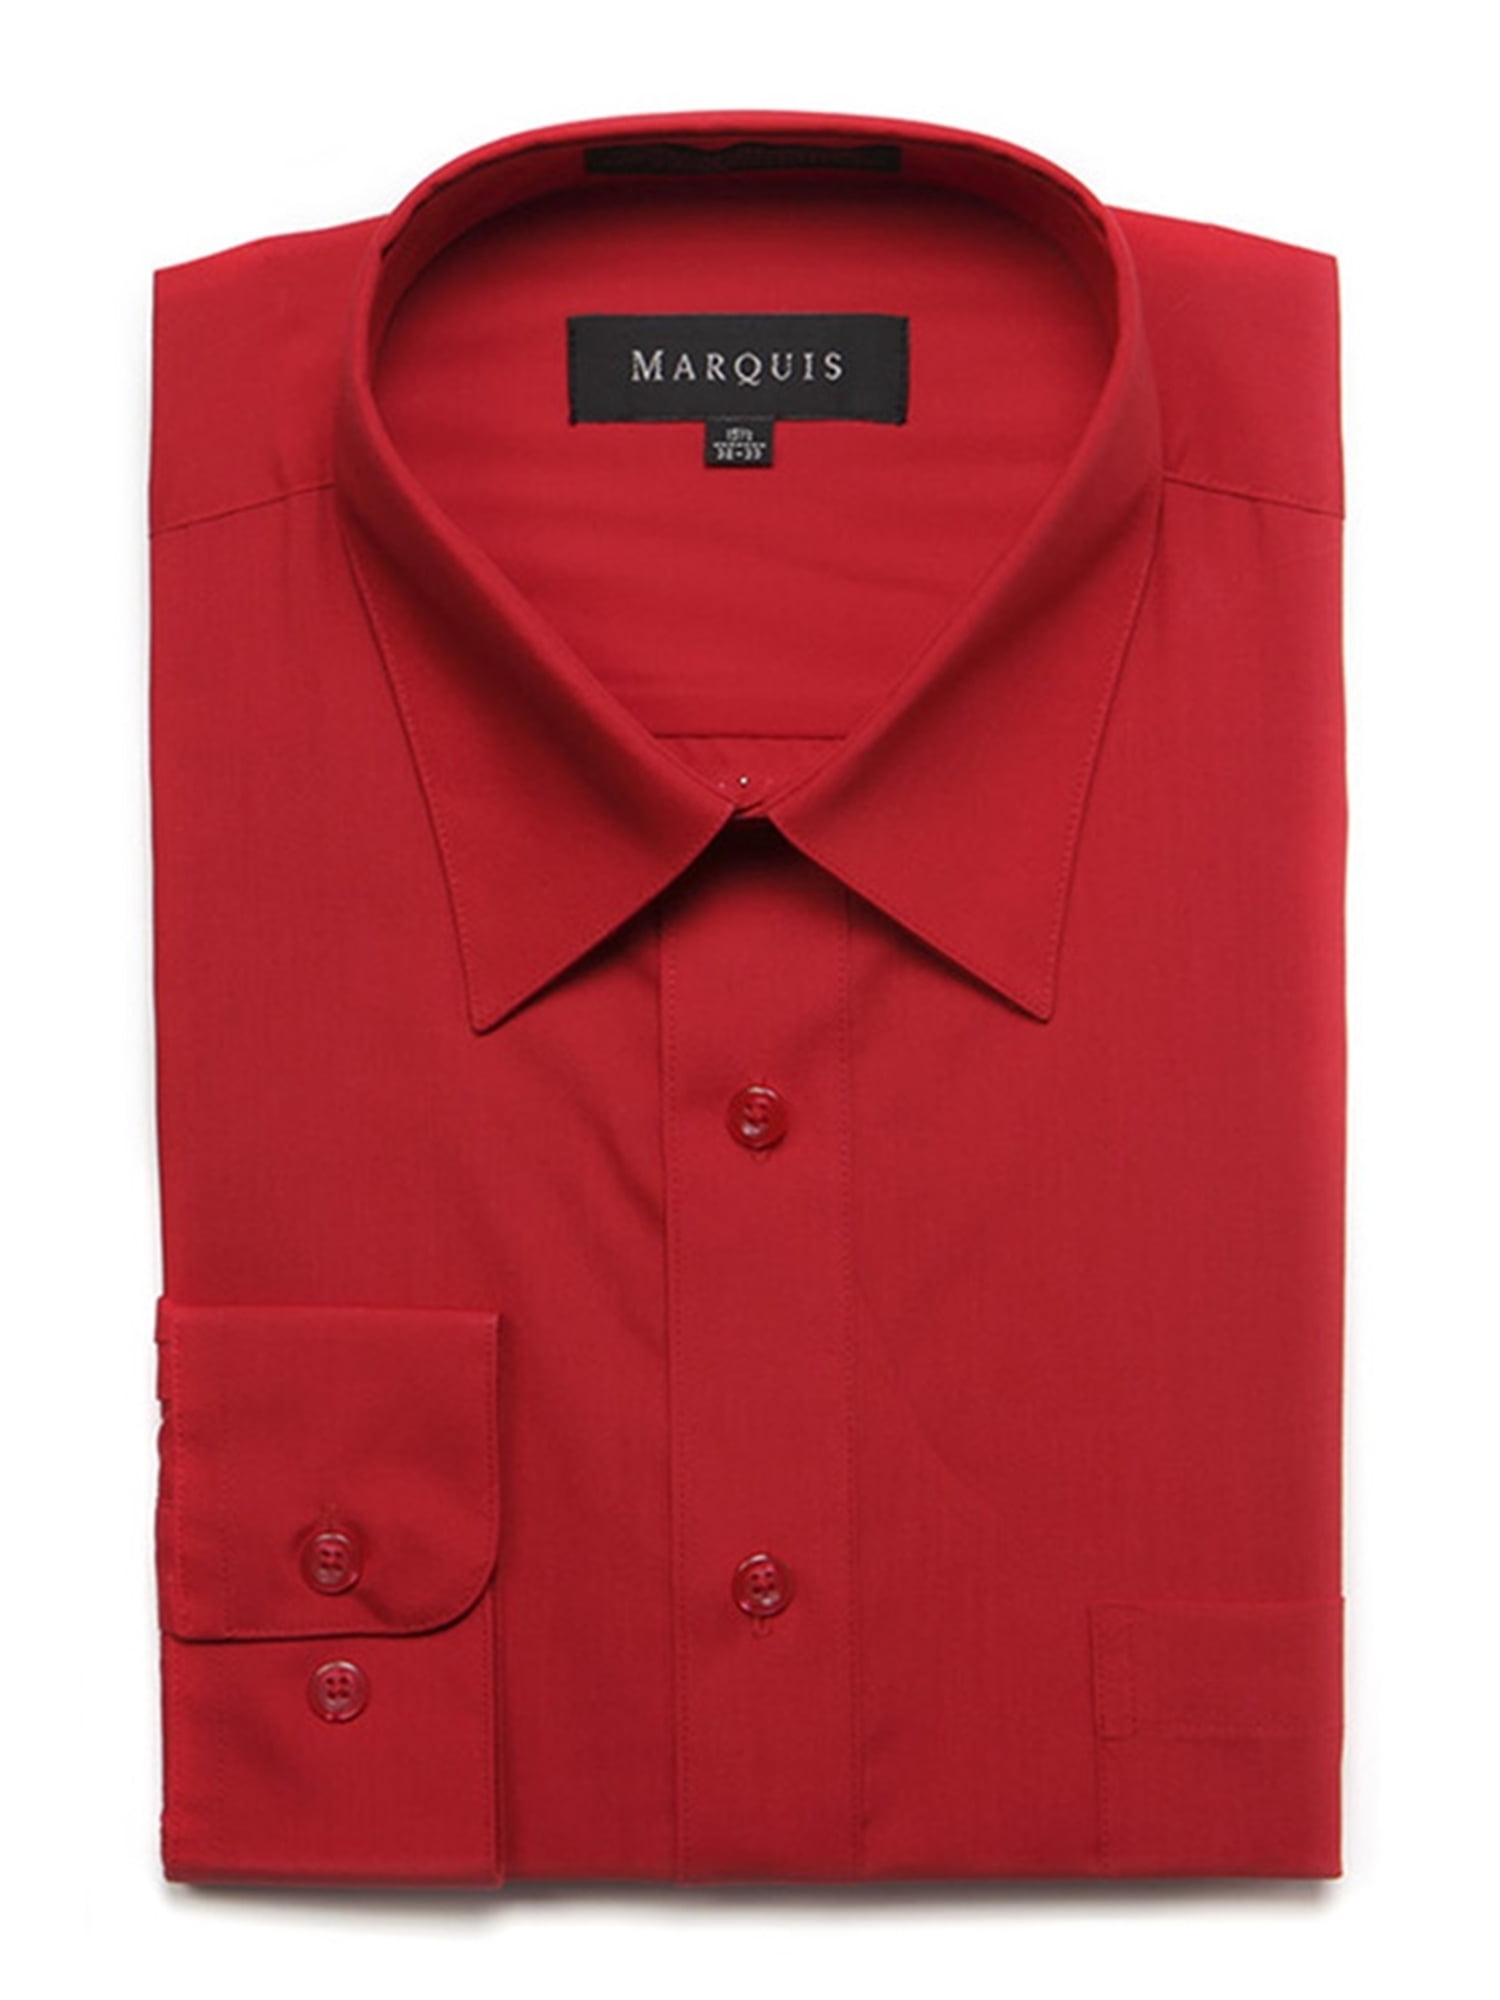 Marquis Men's Long Sleeve Regular Fit Big & Tall Size Dress Shirt